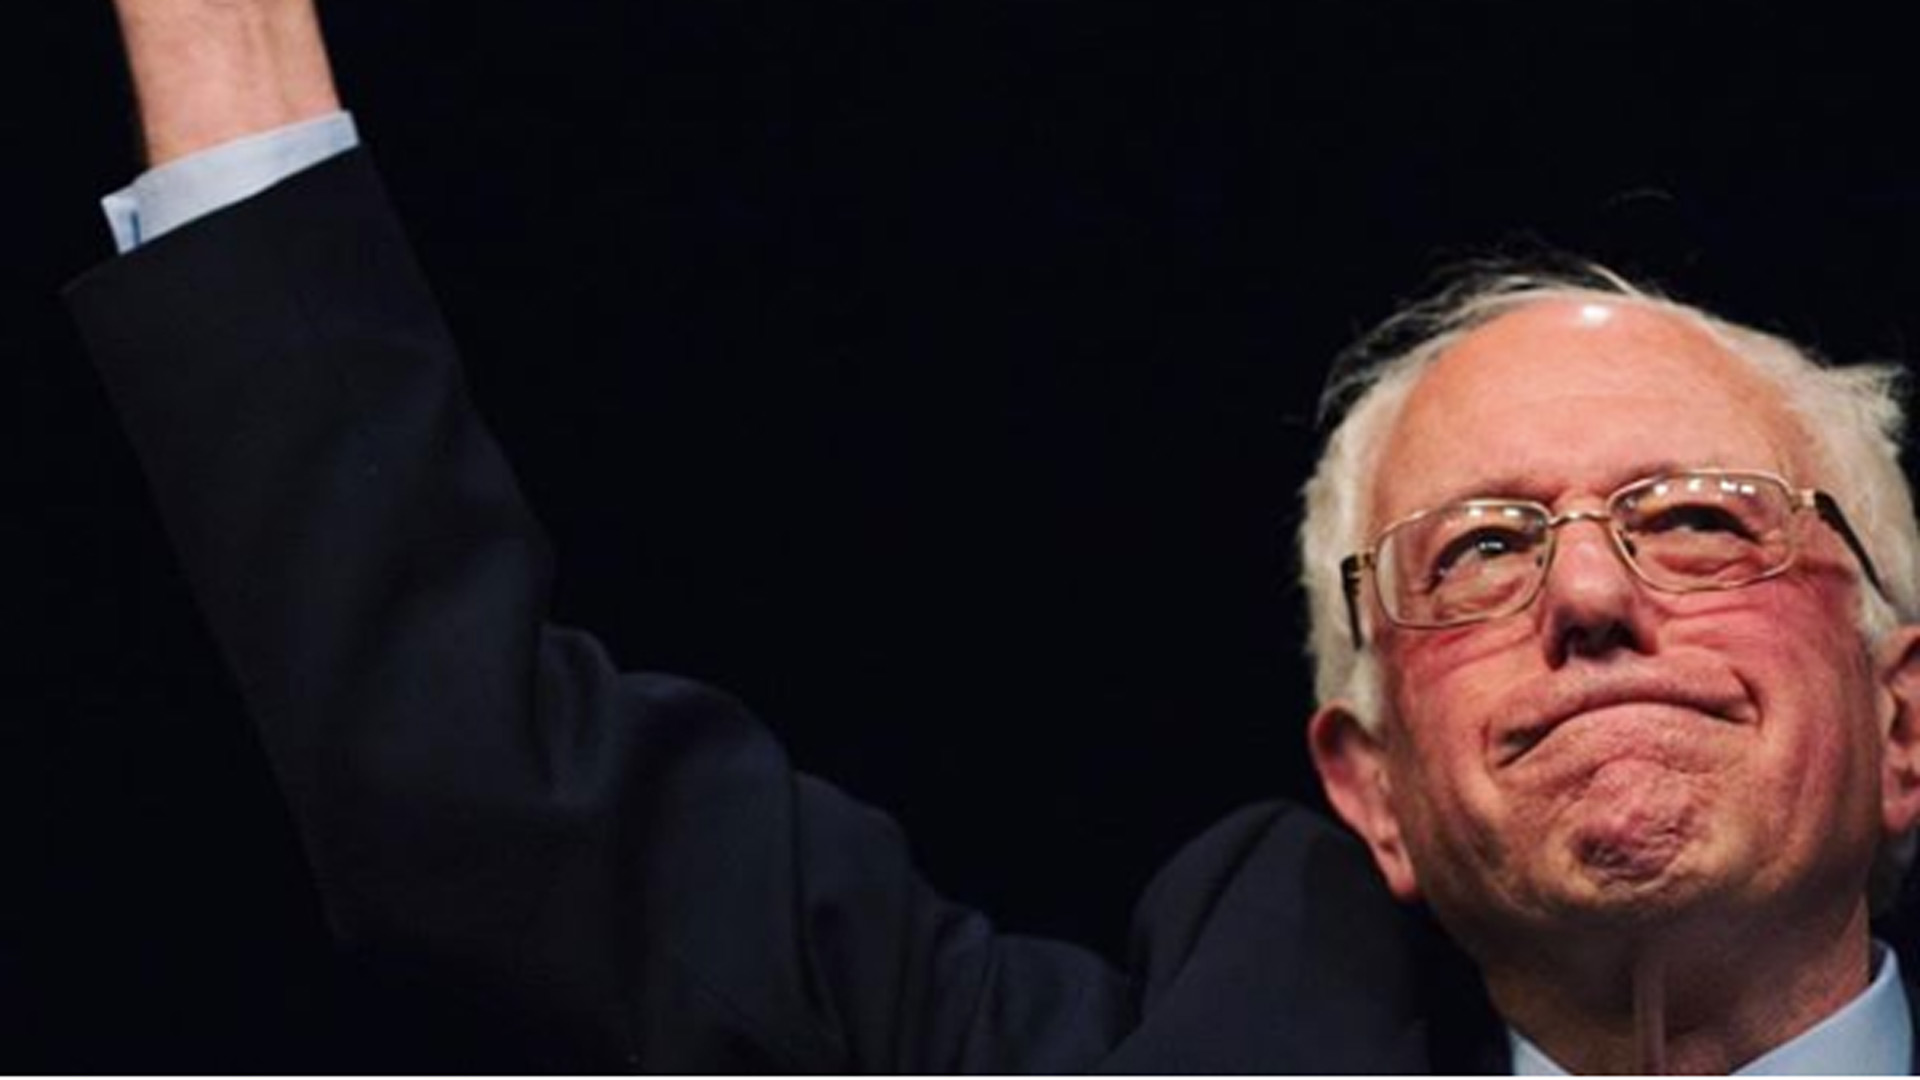 Bernie Sanders presenta por segunda vez su candidatura a la presidencia de EEUU